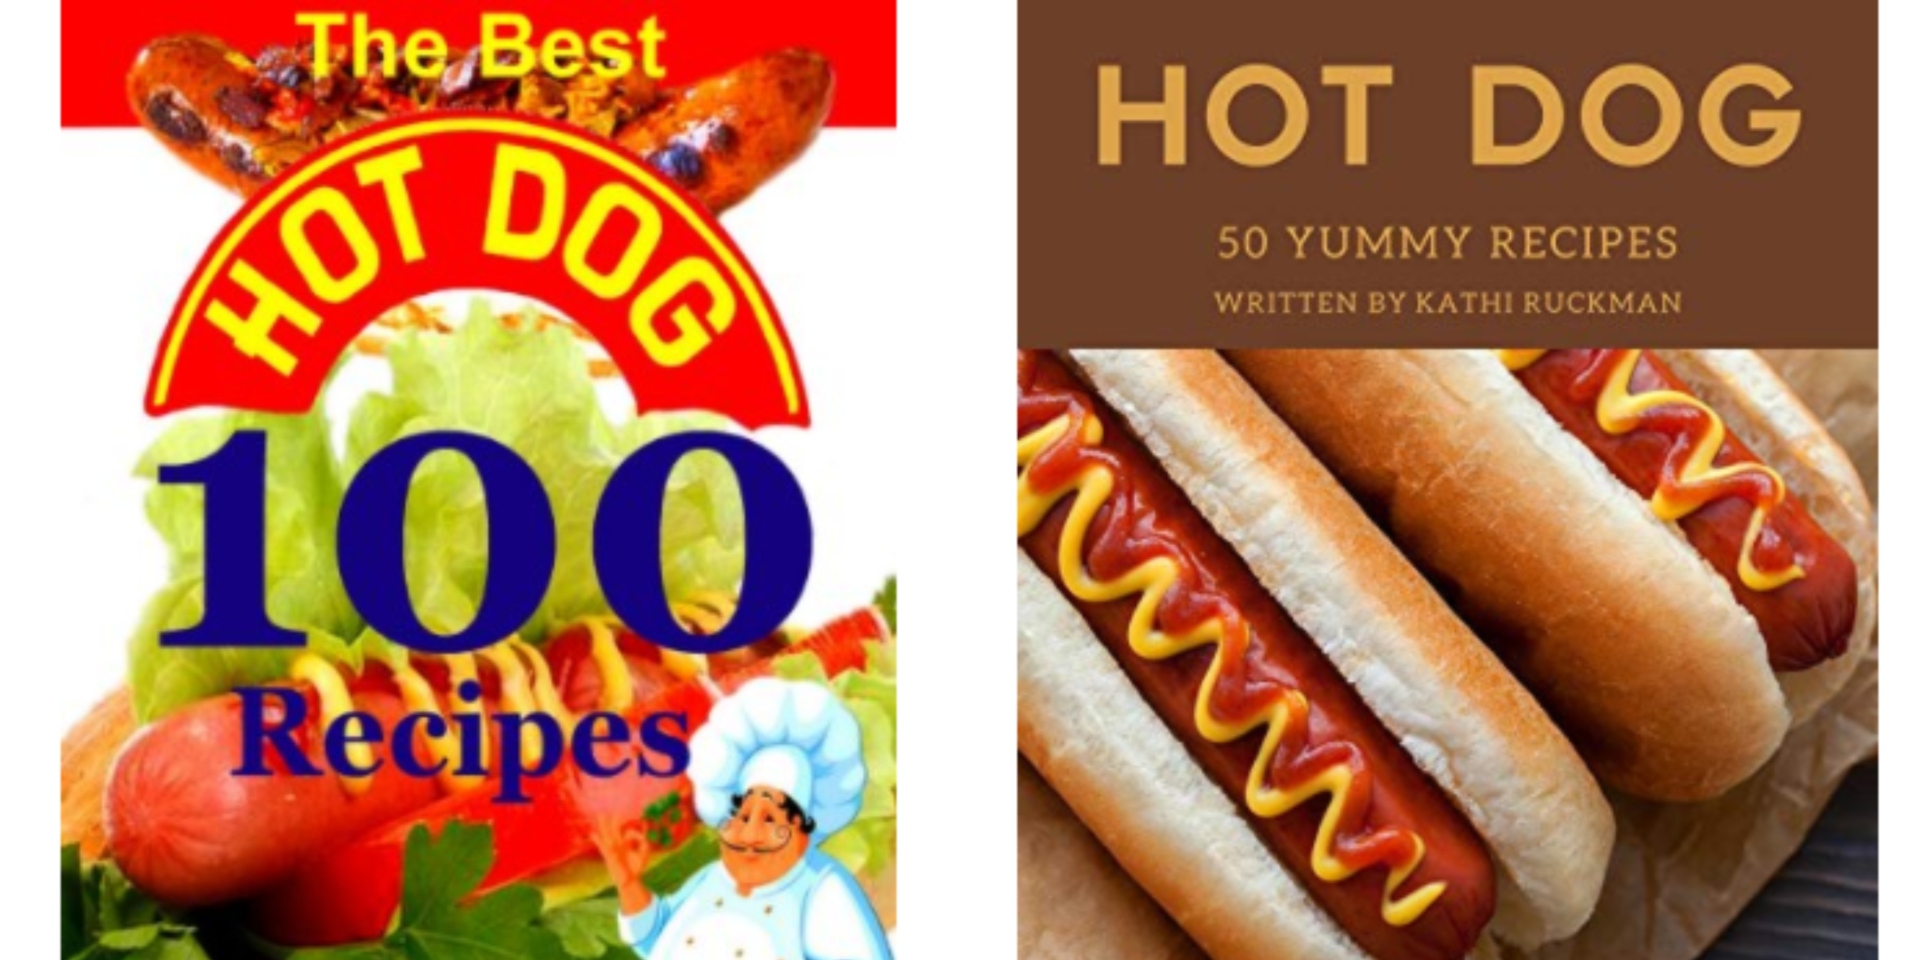 Hot Dog O Prensado - ❤️EU QUERO HOJE! 🌭 HOT DOG TRADICIONAL POR 10,00!🌭  Toda quinta você come bem e ainda por cima economiza! É o barato de quinta!  Vem aproveitar, estamos